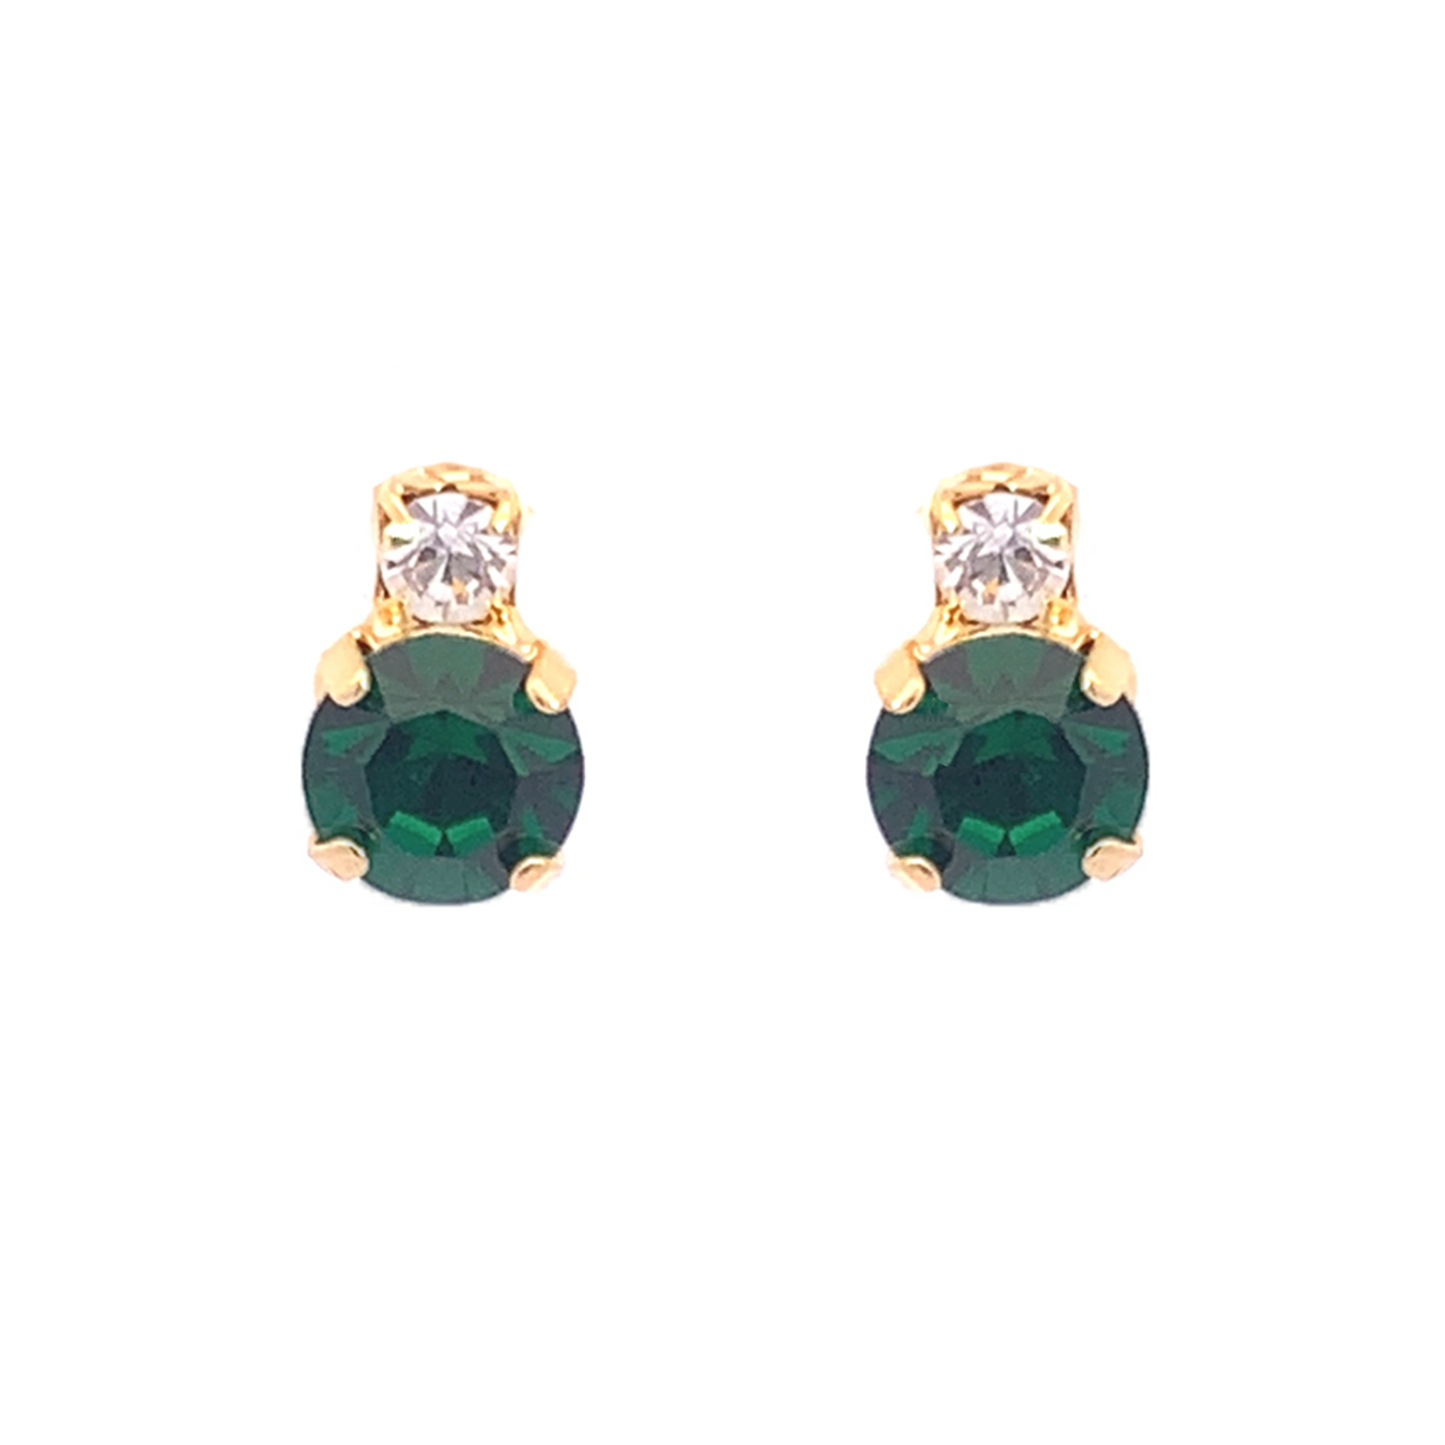 Emerald stud earrings gold